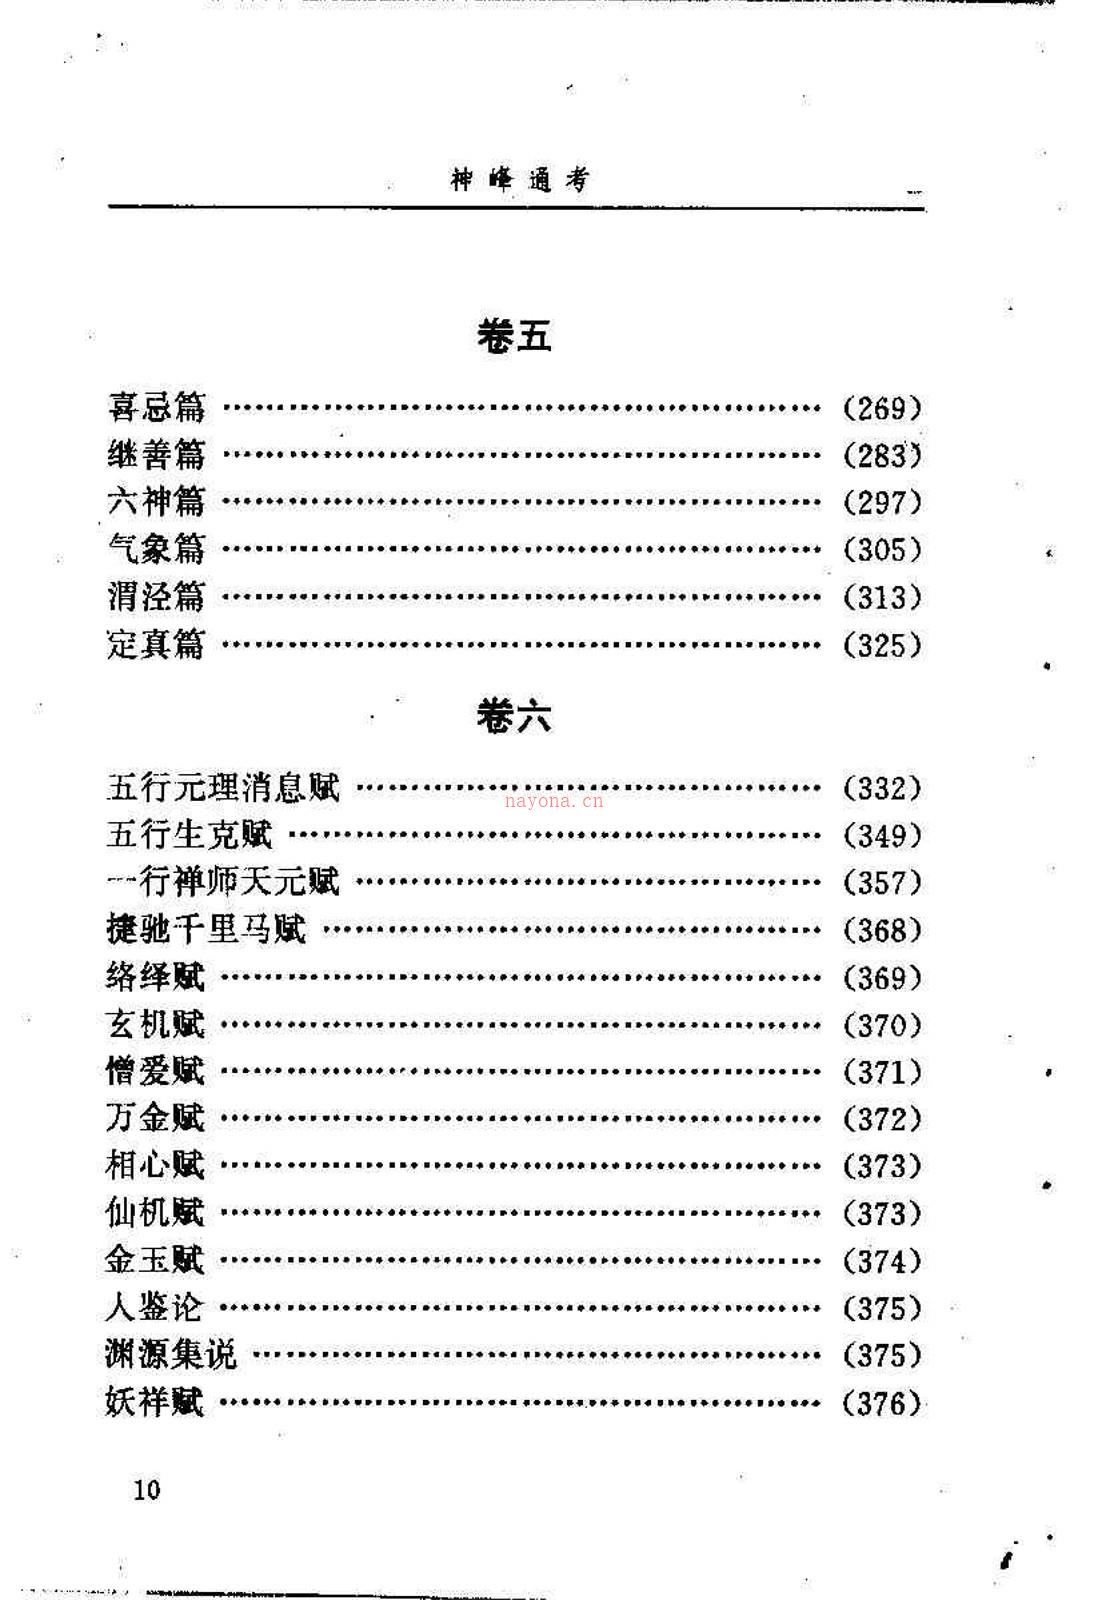 邵伟华点校-神峰通考 397页.pdf 百度网盘资源